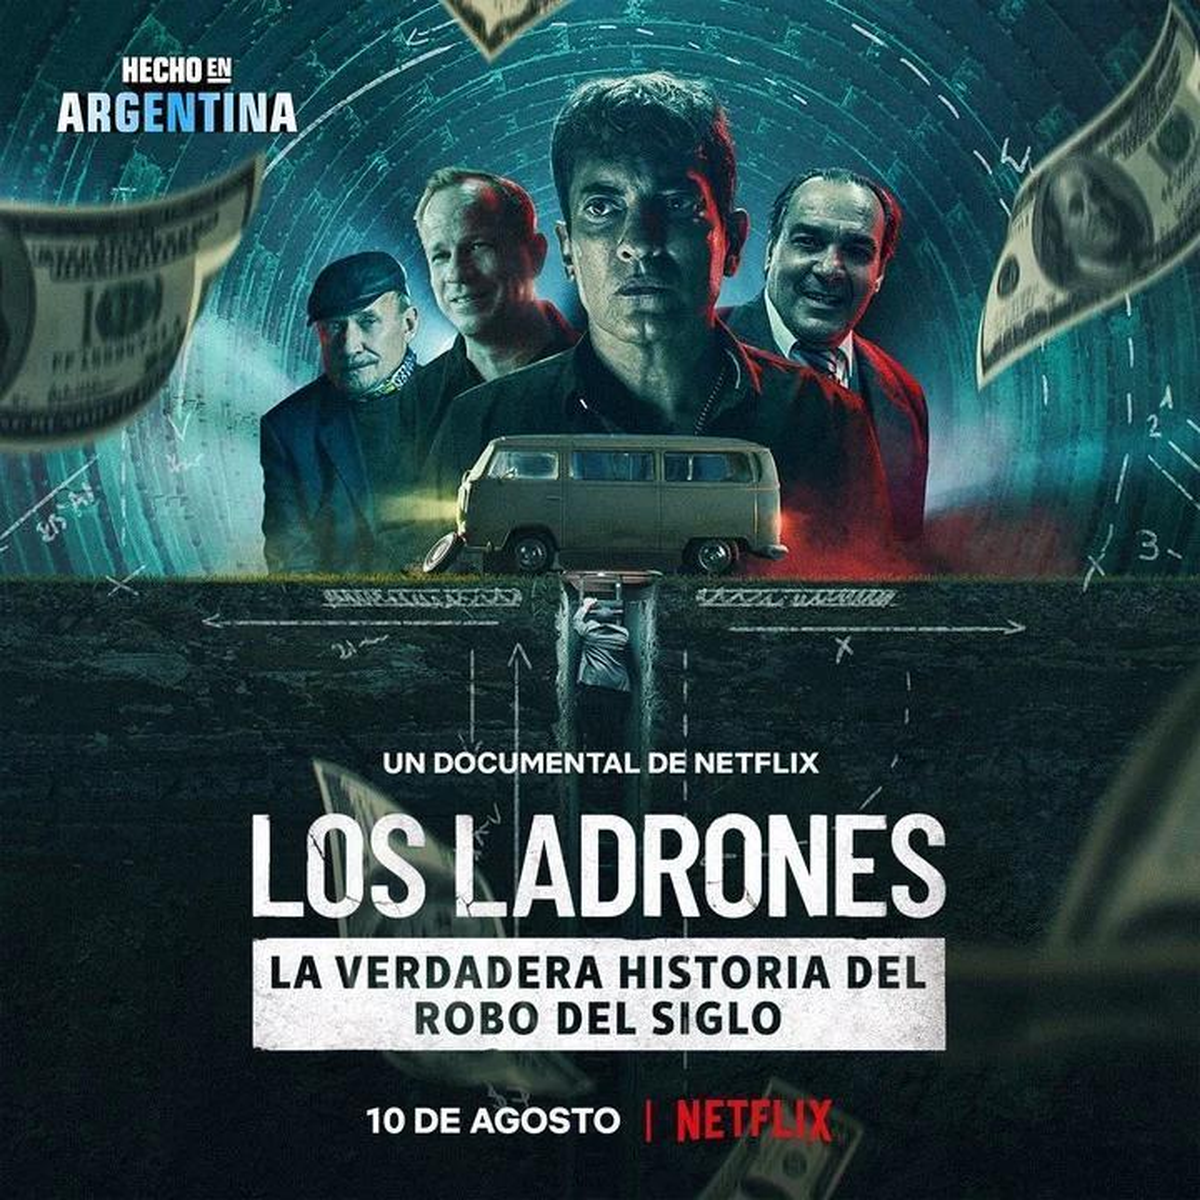 La historia de los ladrones del robo del siglo en Argentina. 